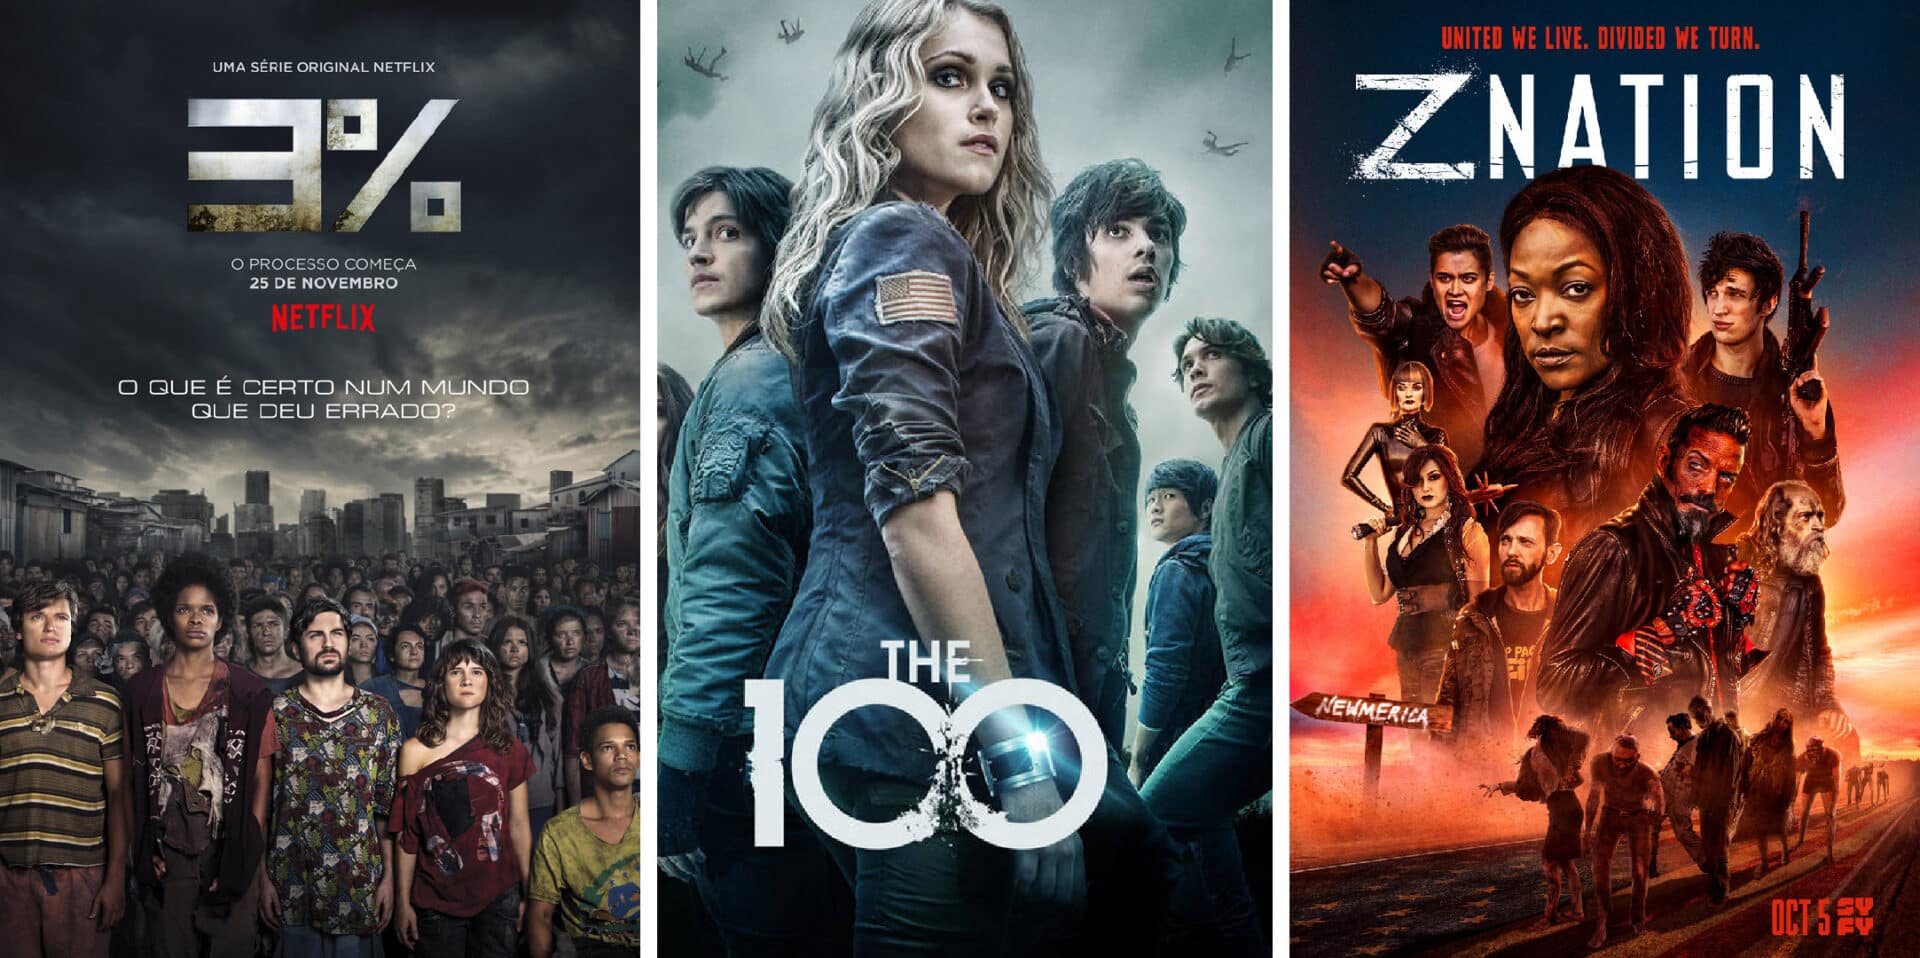 Da Z Nation a The 100: 8 serie tv post apocalittiche da vedere su Netflix